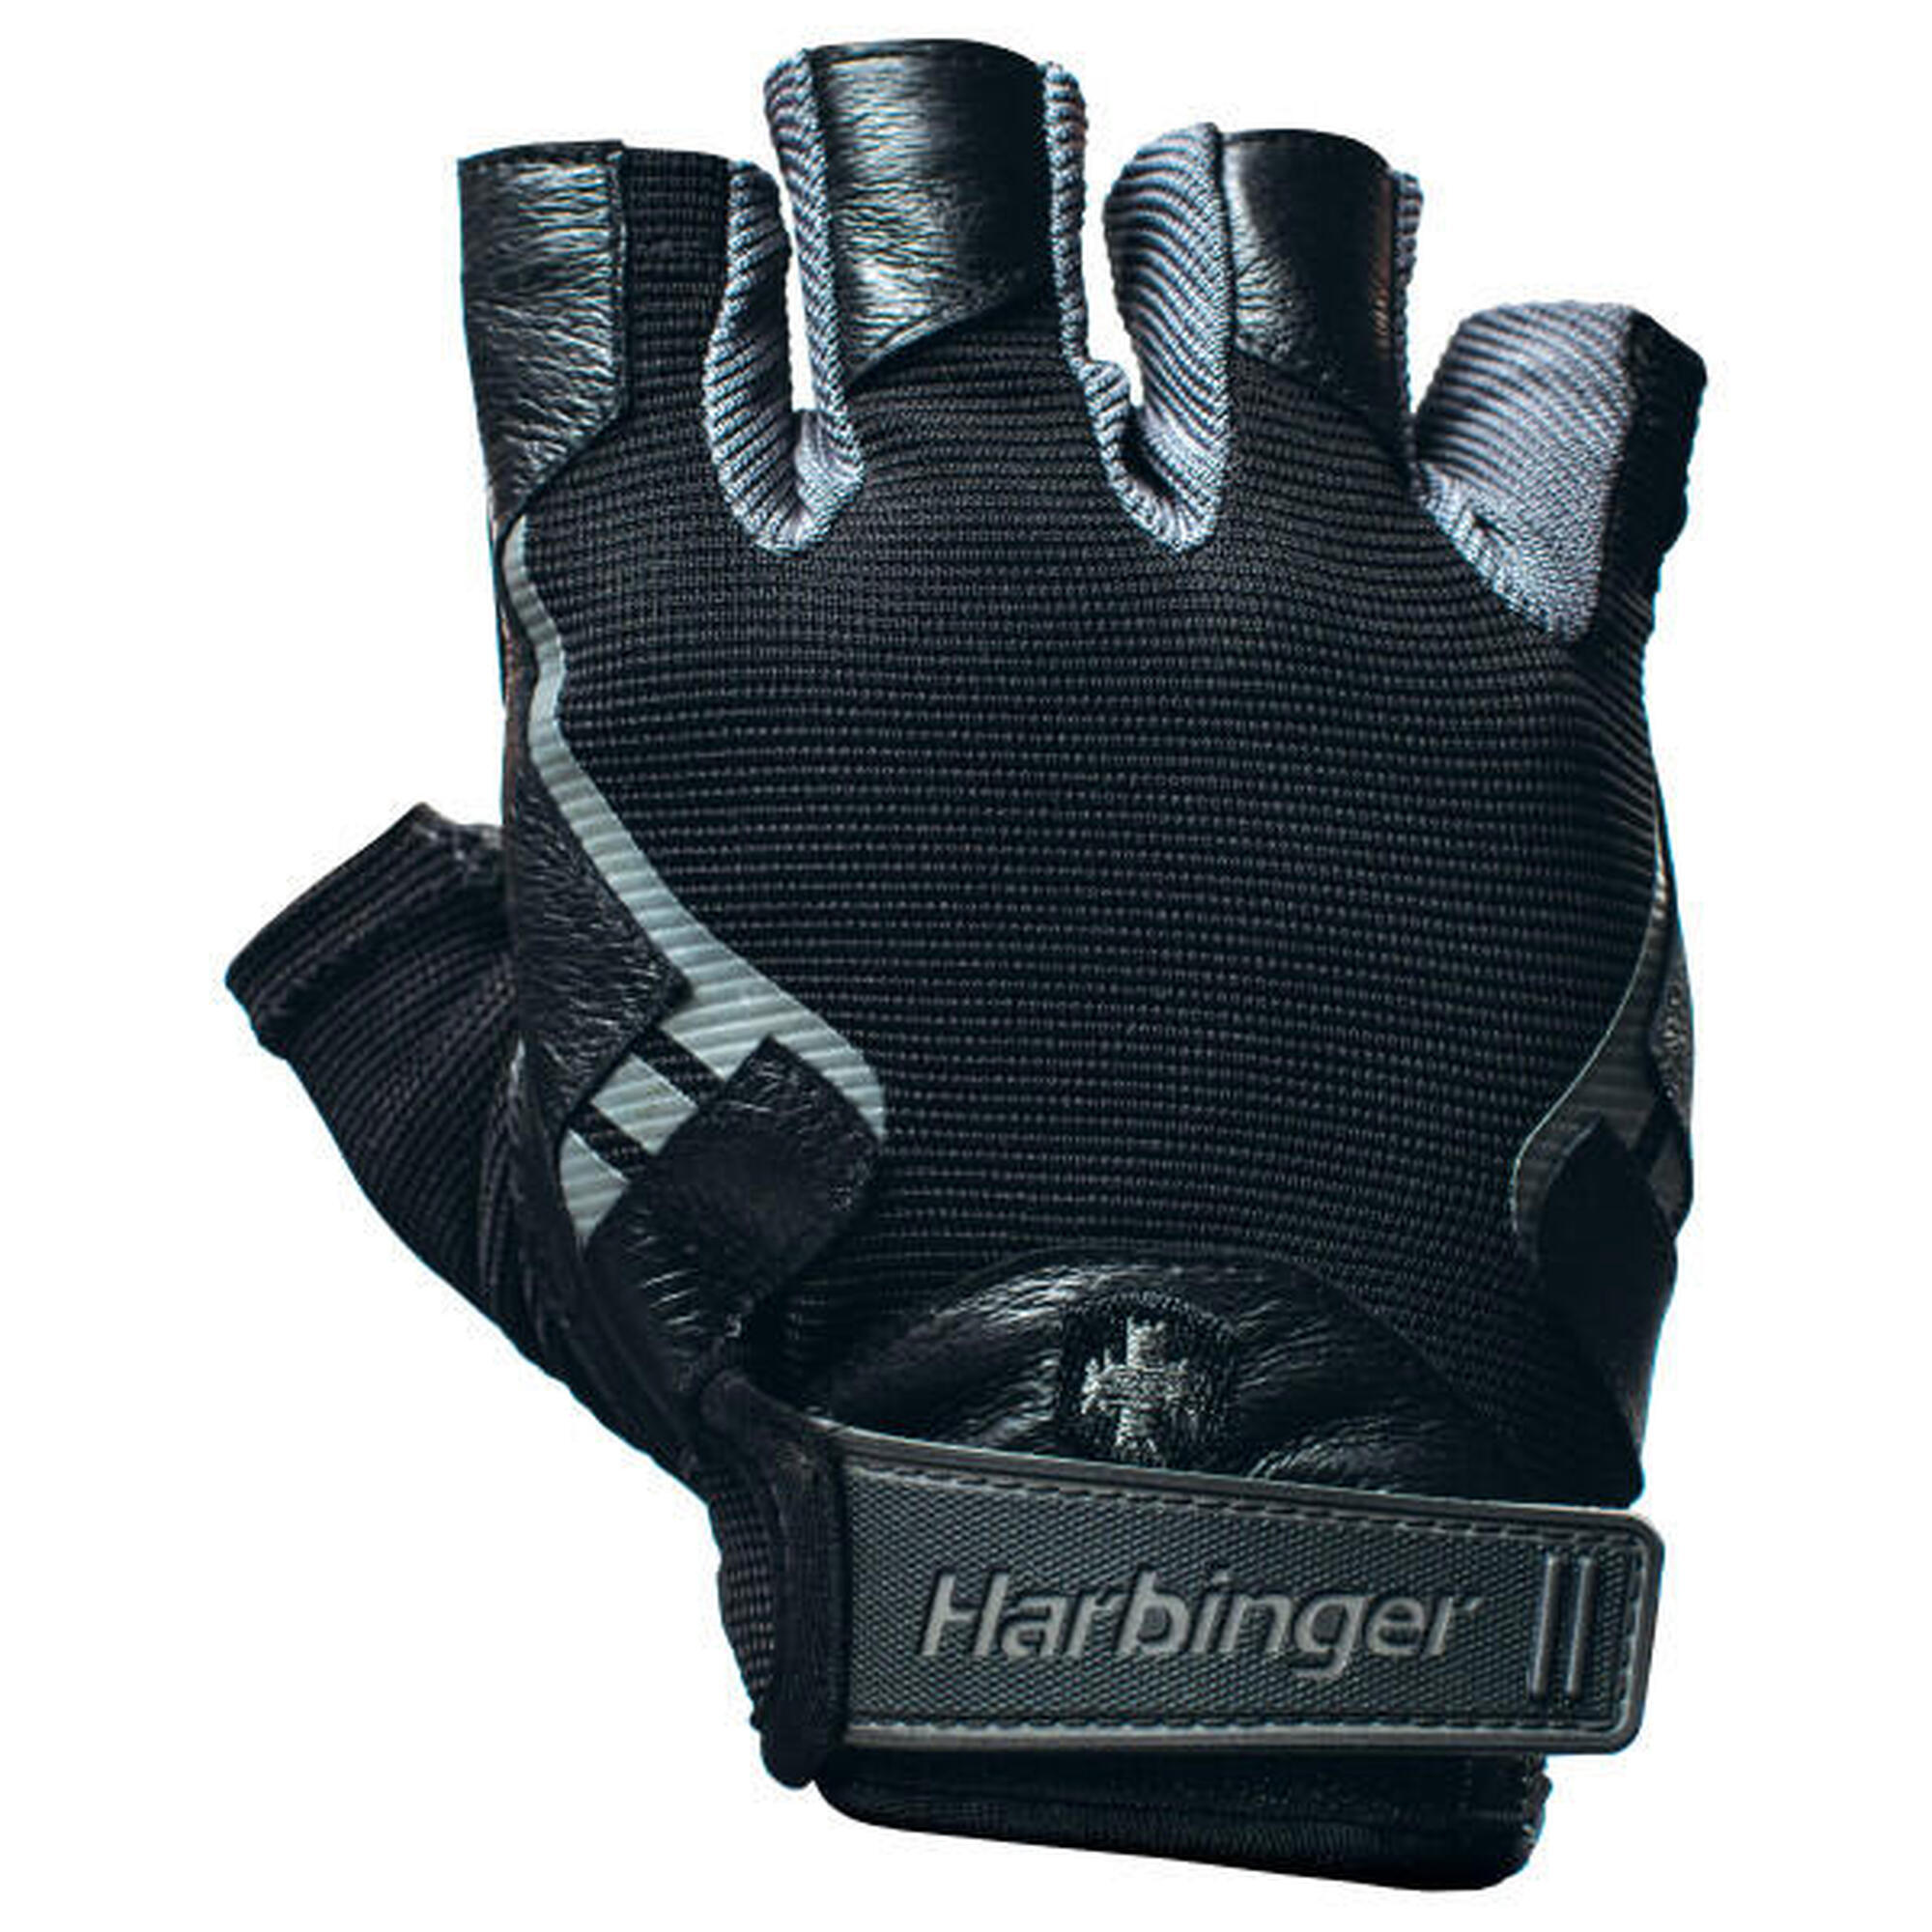 Harbinger - gants avec prise ferme, confort optimal - taille M - noir